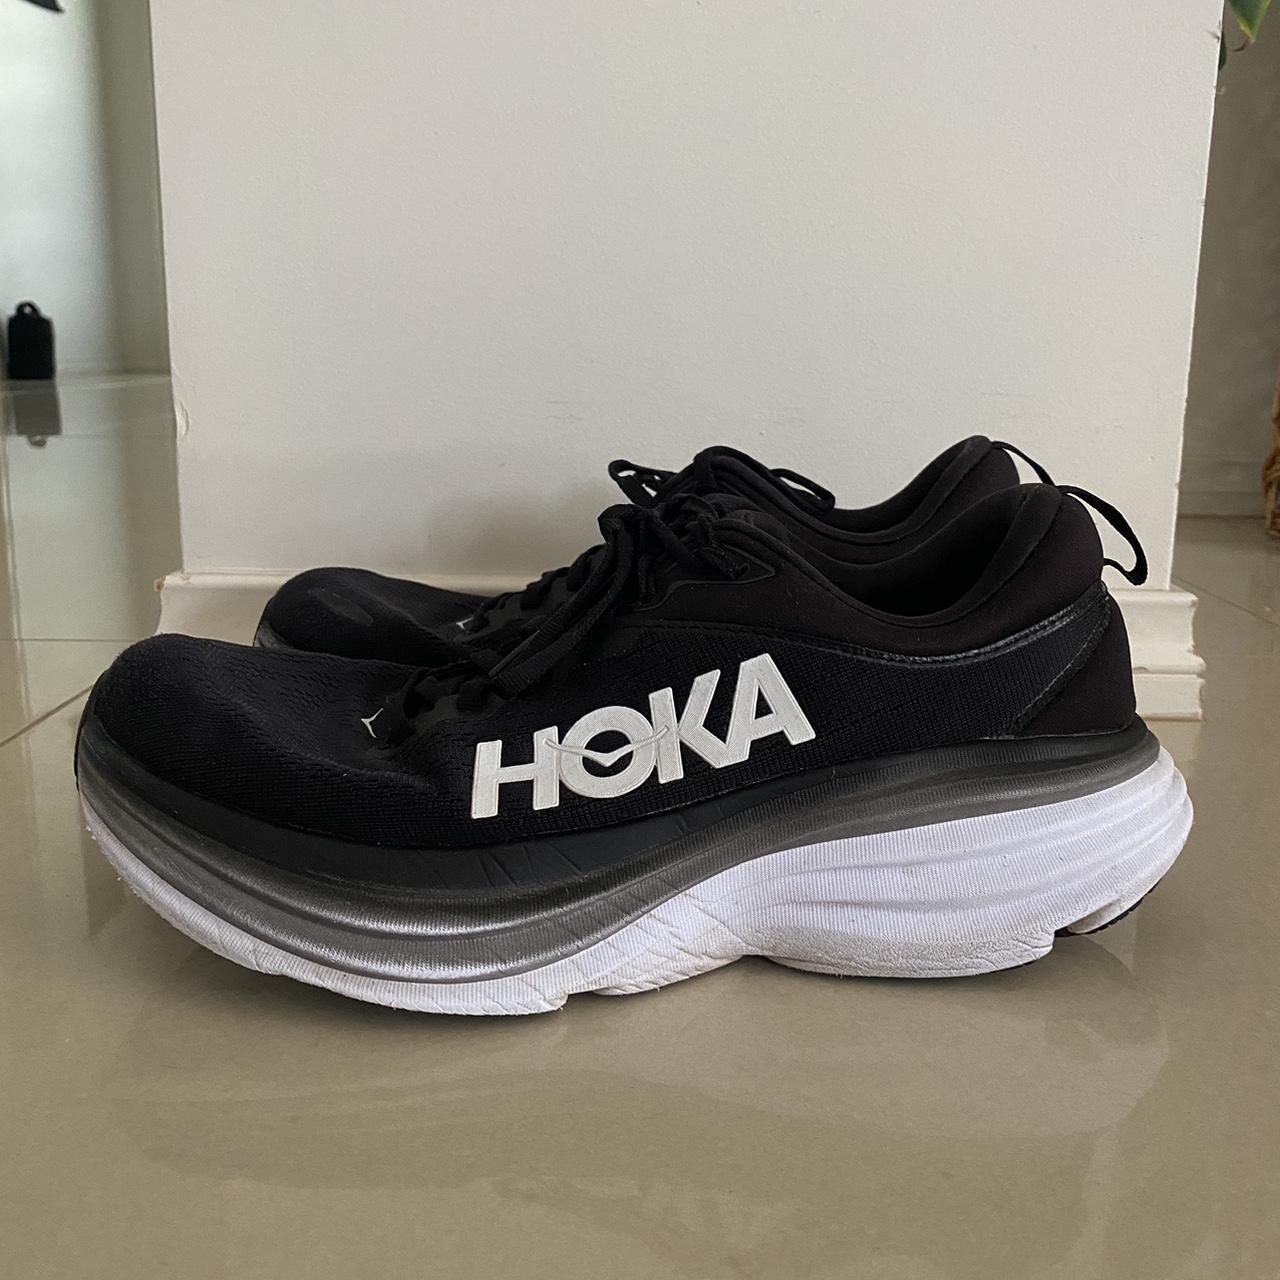 HOKA Bondi 8 - black and white Size US 10B Used but... - Depop